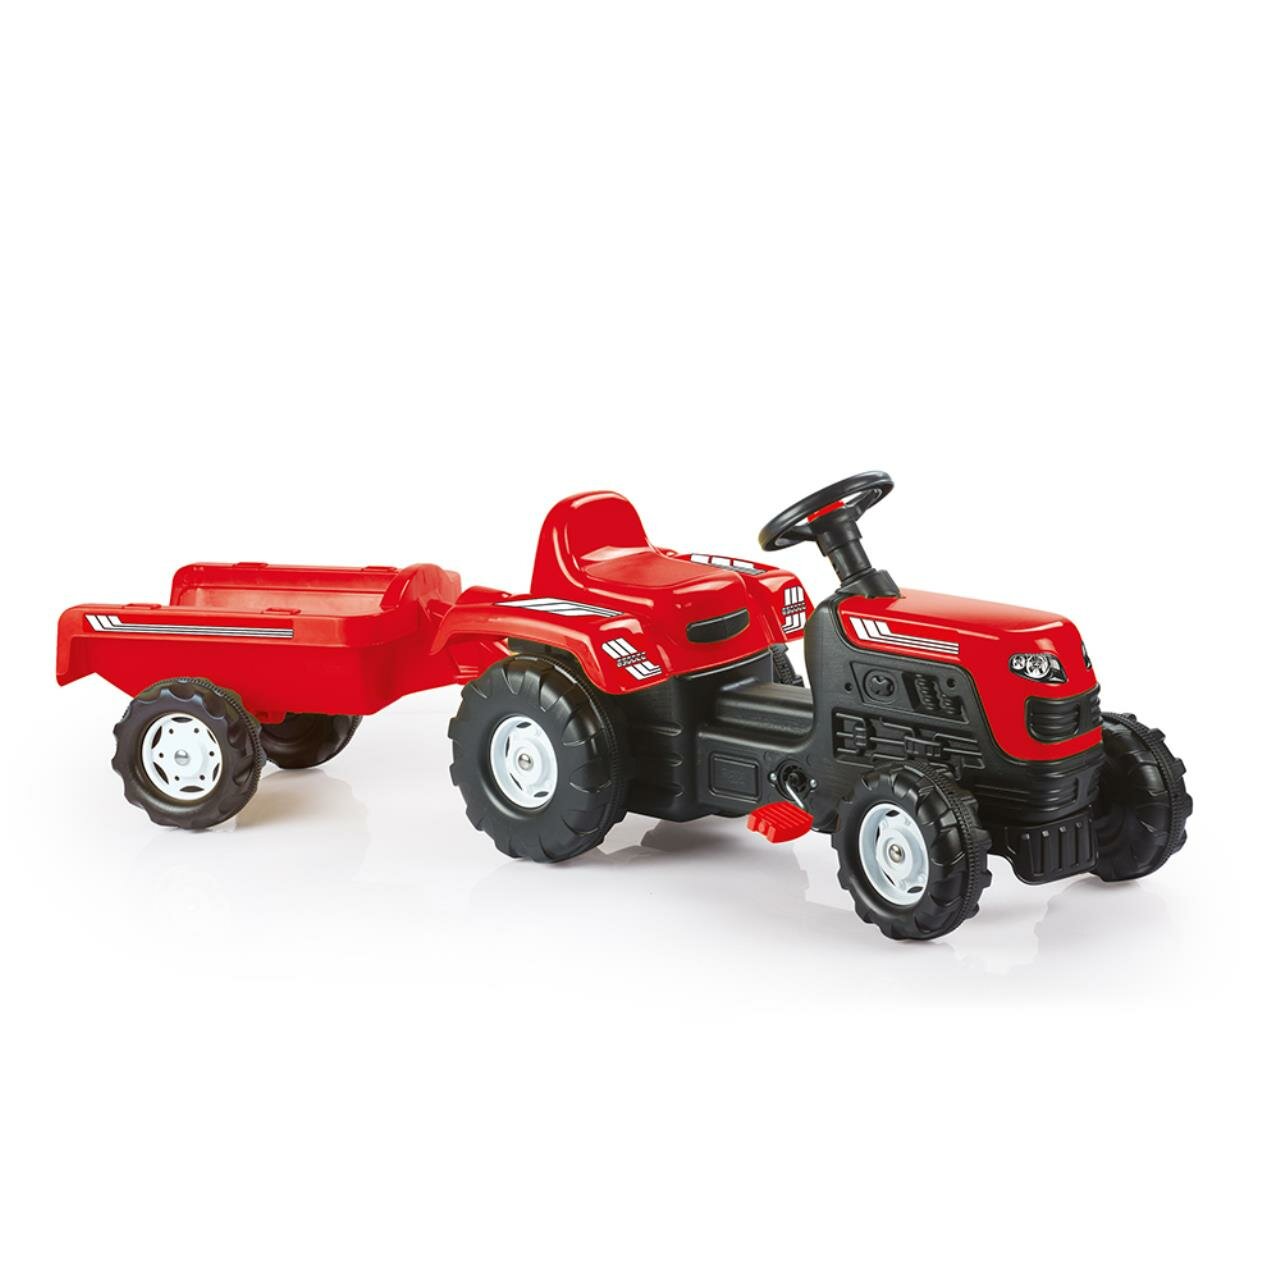 8146 Трактор педальный DOLU Ranchero, с прицепом, клаксон, красный